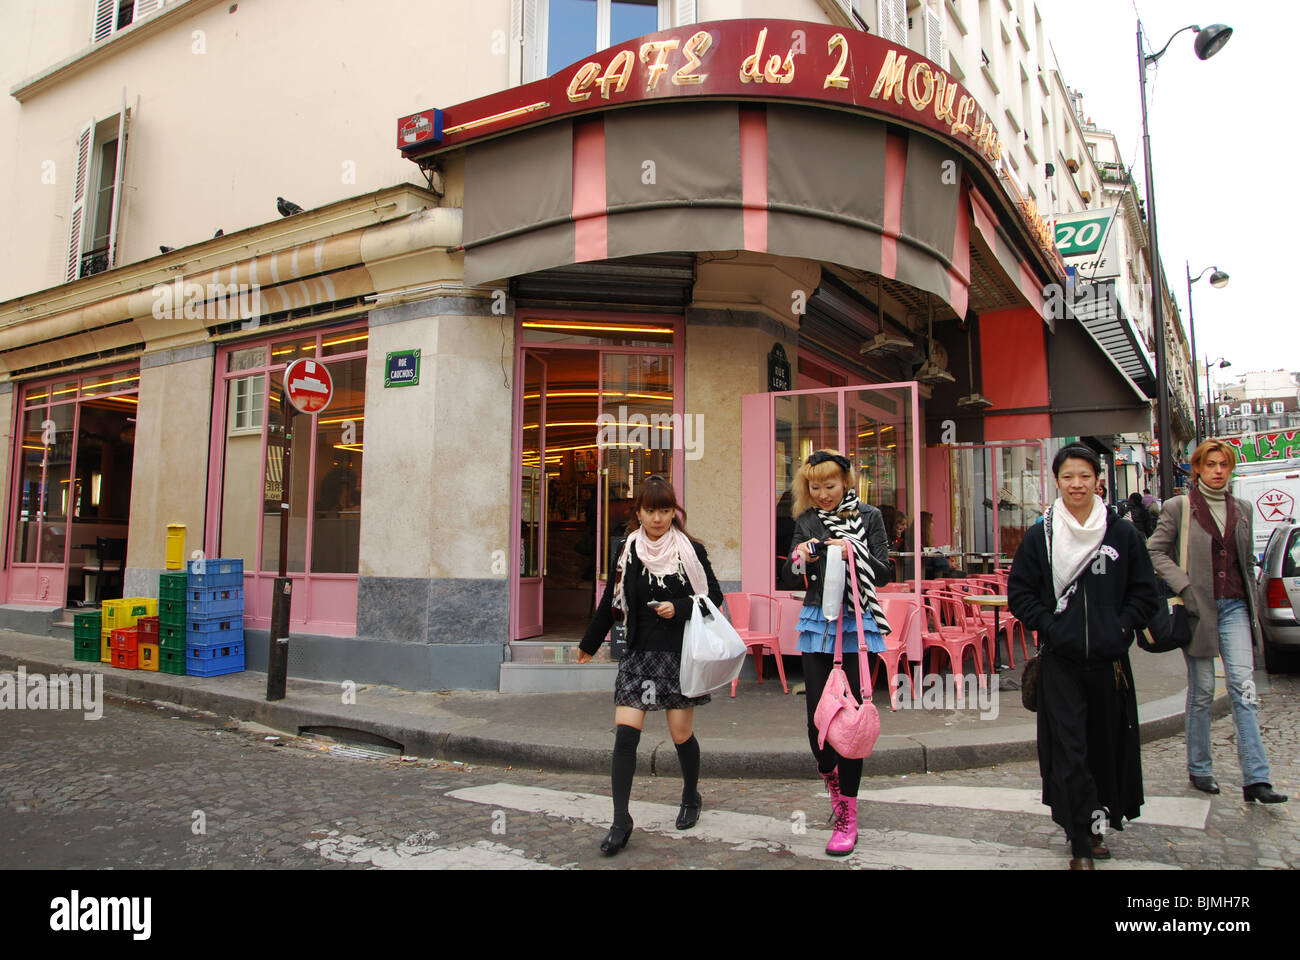 Japanese tourists at Cafe des 2 Moulins famous for Amelie film Paris France Stock Photo